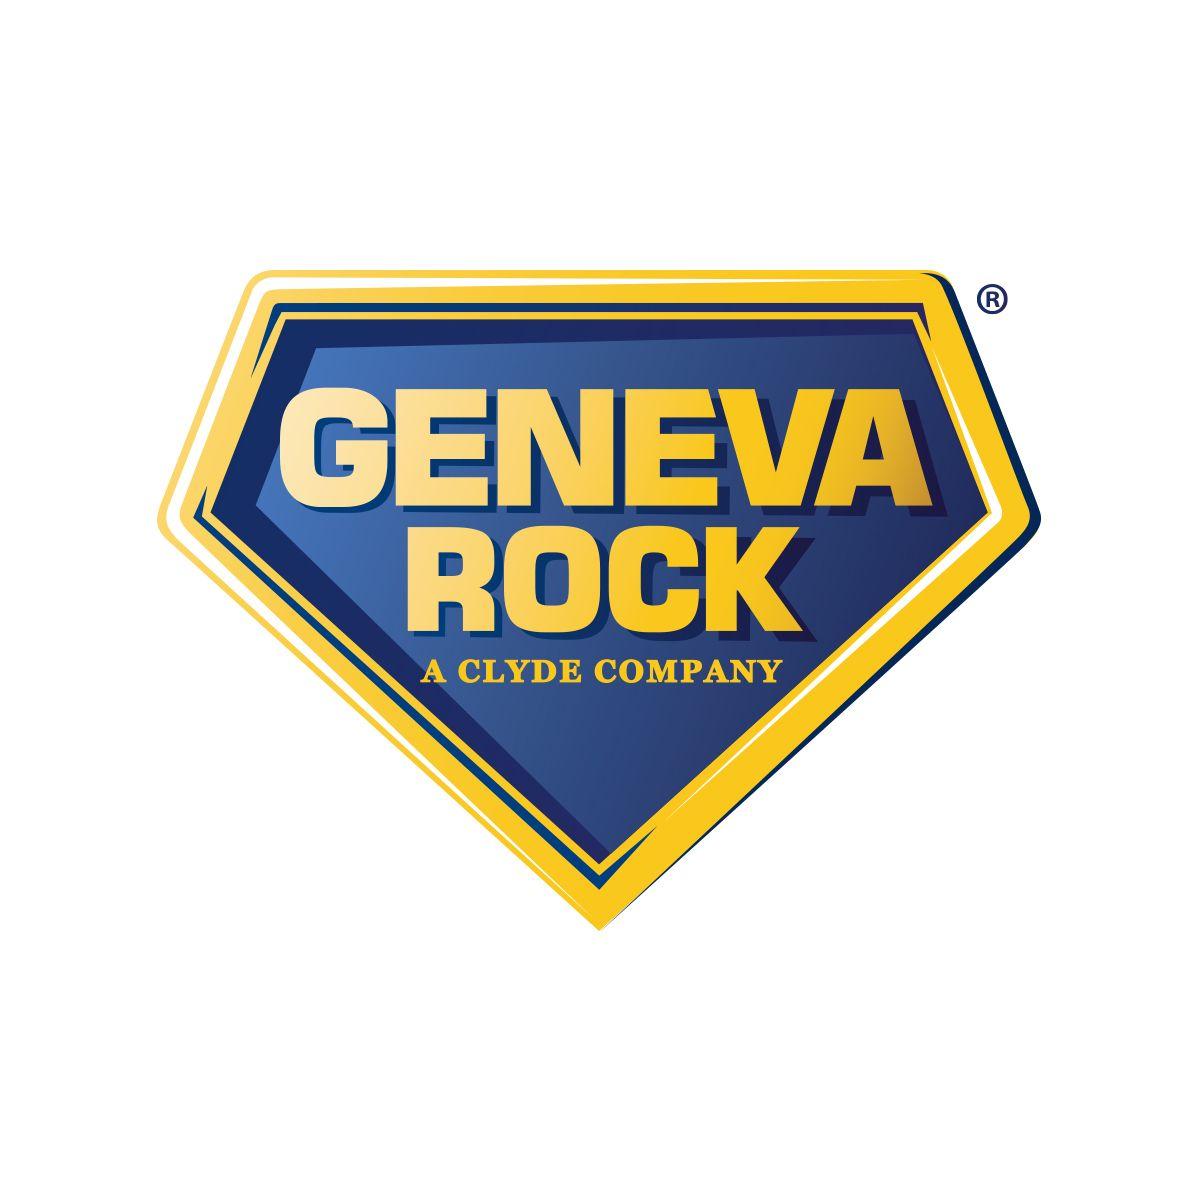 Rock Company Logo - Utah Construction Services Company. Geneva Rock Products